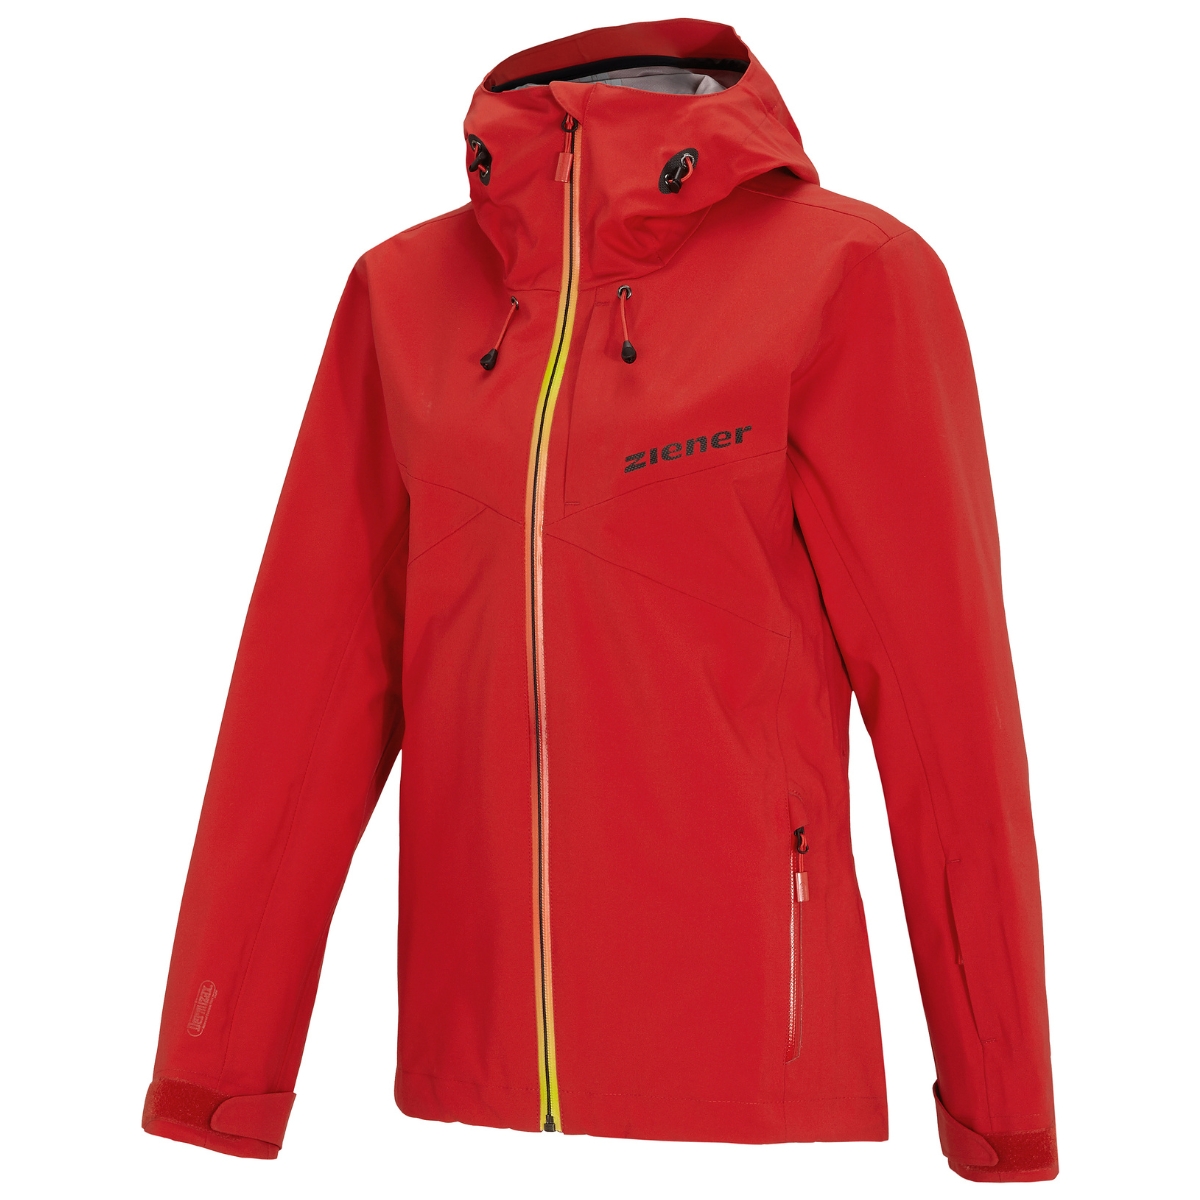 Ziener Damen Skijacke Modell Toja Lady Teamwear mit DERMIZAX® -Membran Art. 184921-888993 red orange shade